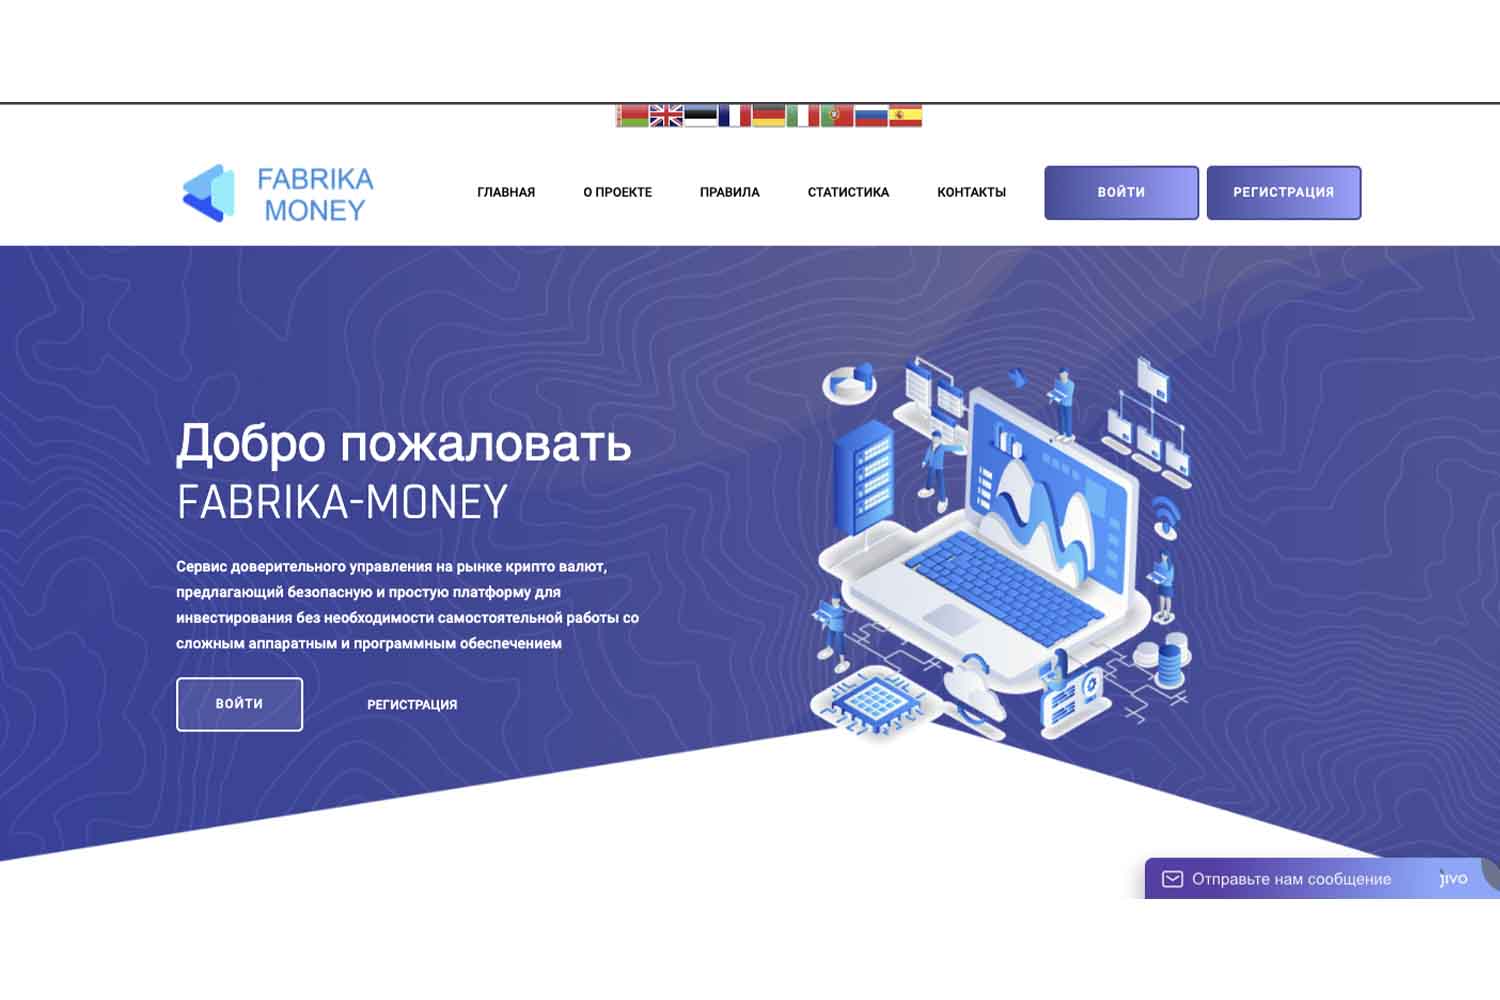 Отзывы о Fabrika-Money: проверенный инвестпроект или обман?